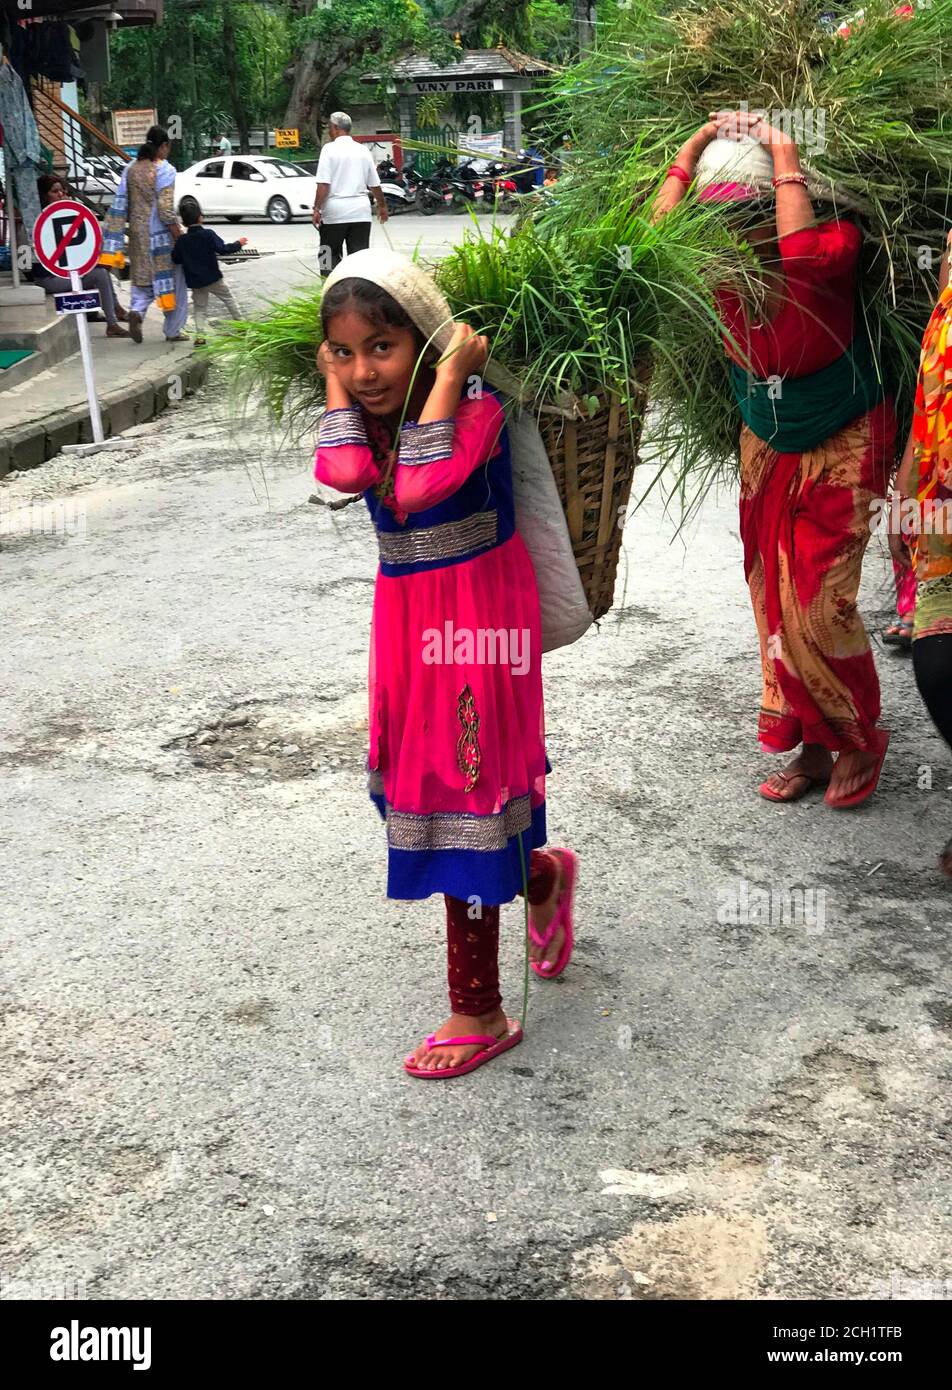 La ragazza nepalese in abito tradizionale porta un grande cesto con un pesante covone d'erba per il suo bestiame. Il bambino nepalese aiuta i genitori. Pokhara, Nepal Foto Stock